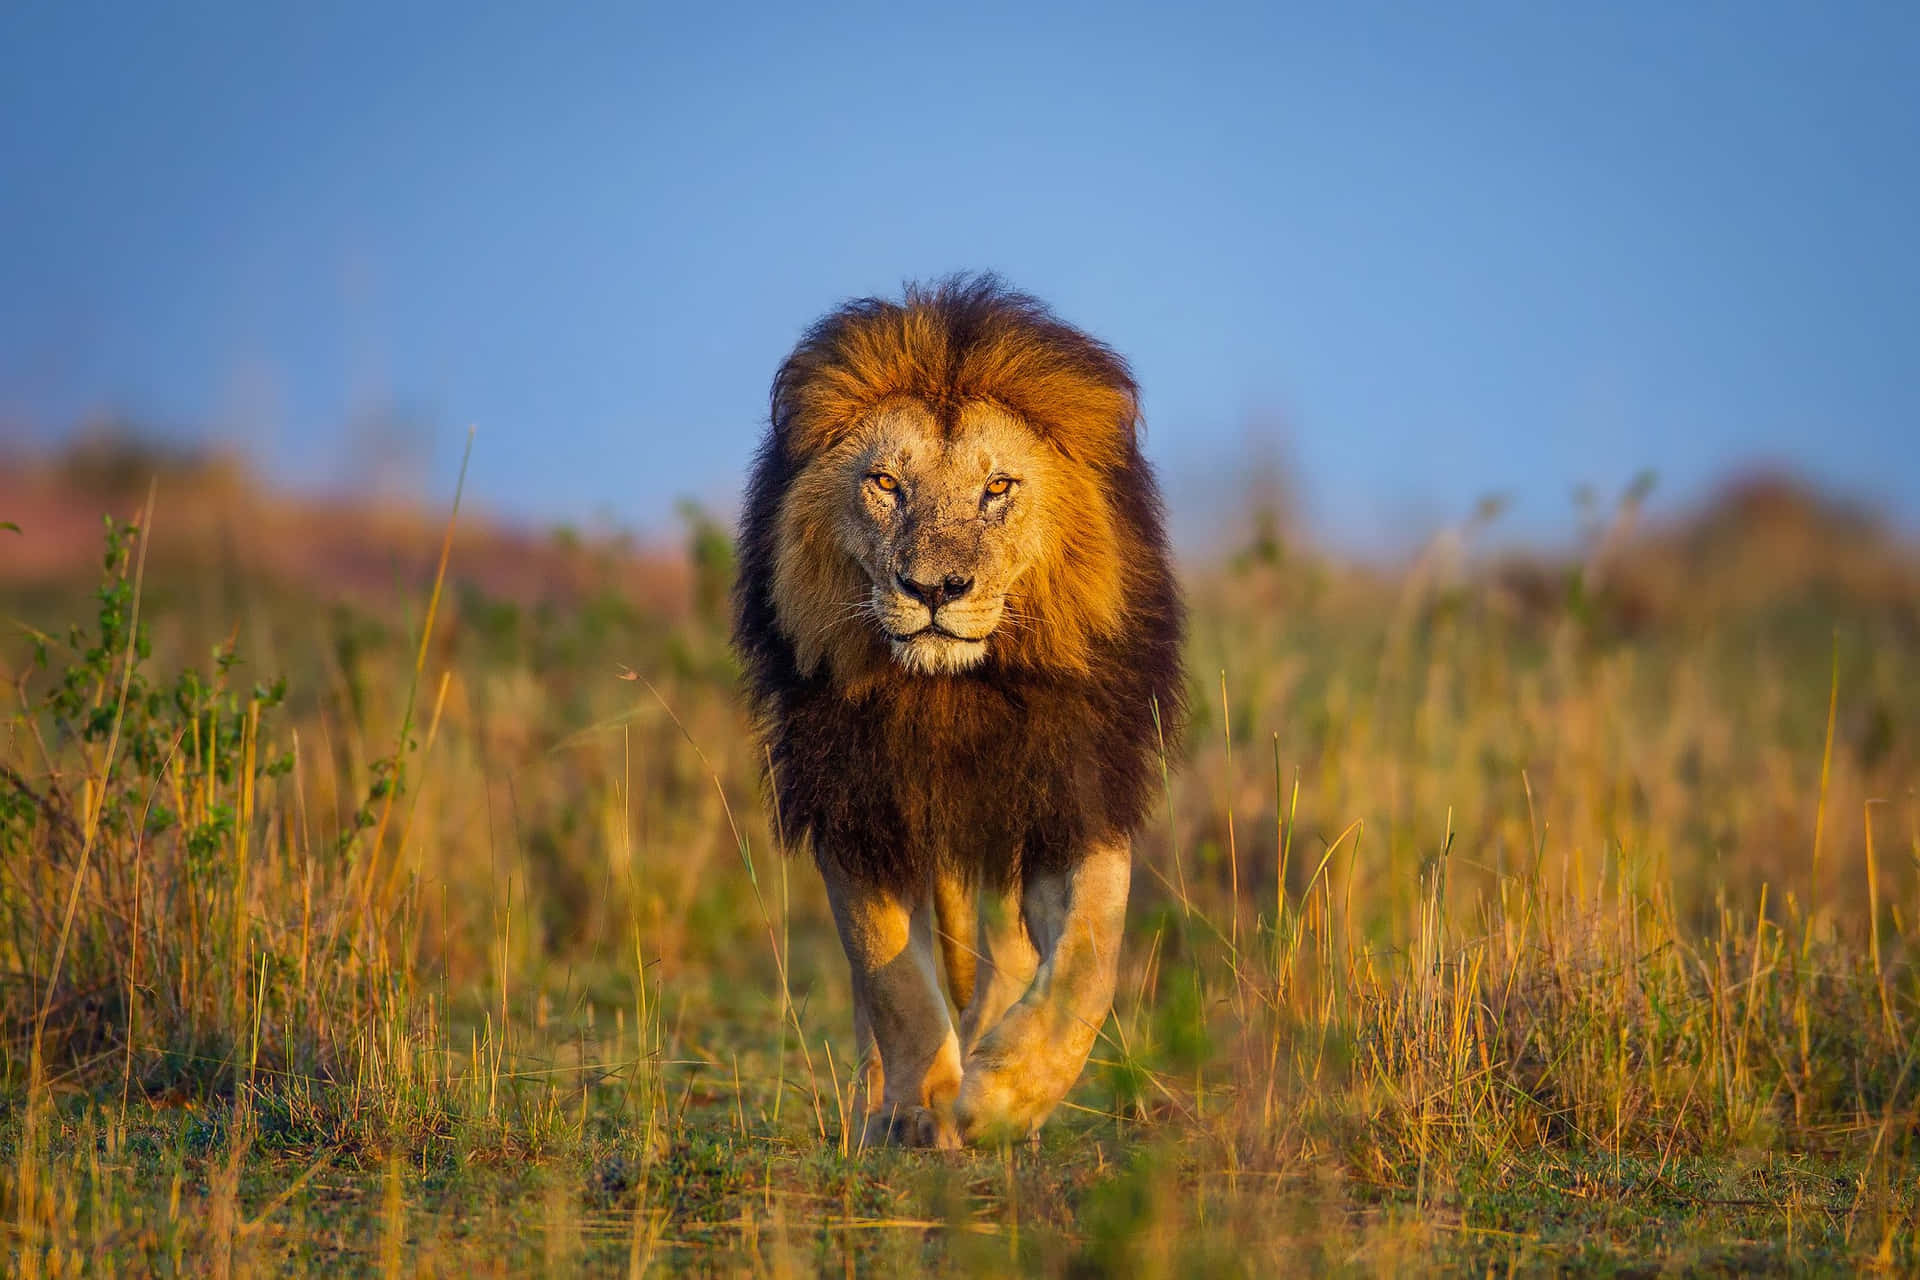 Wild Animals Lion Walking On Grass Picture